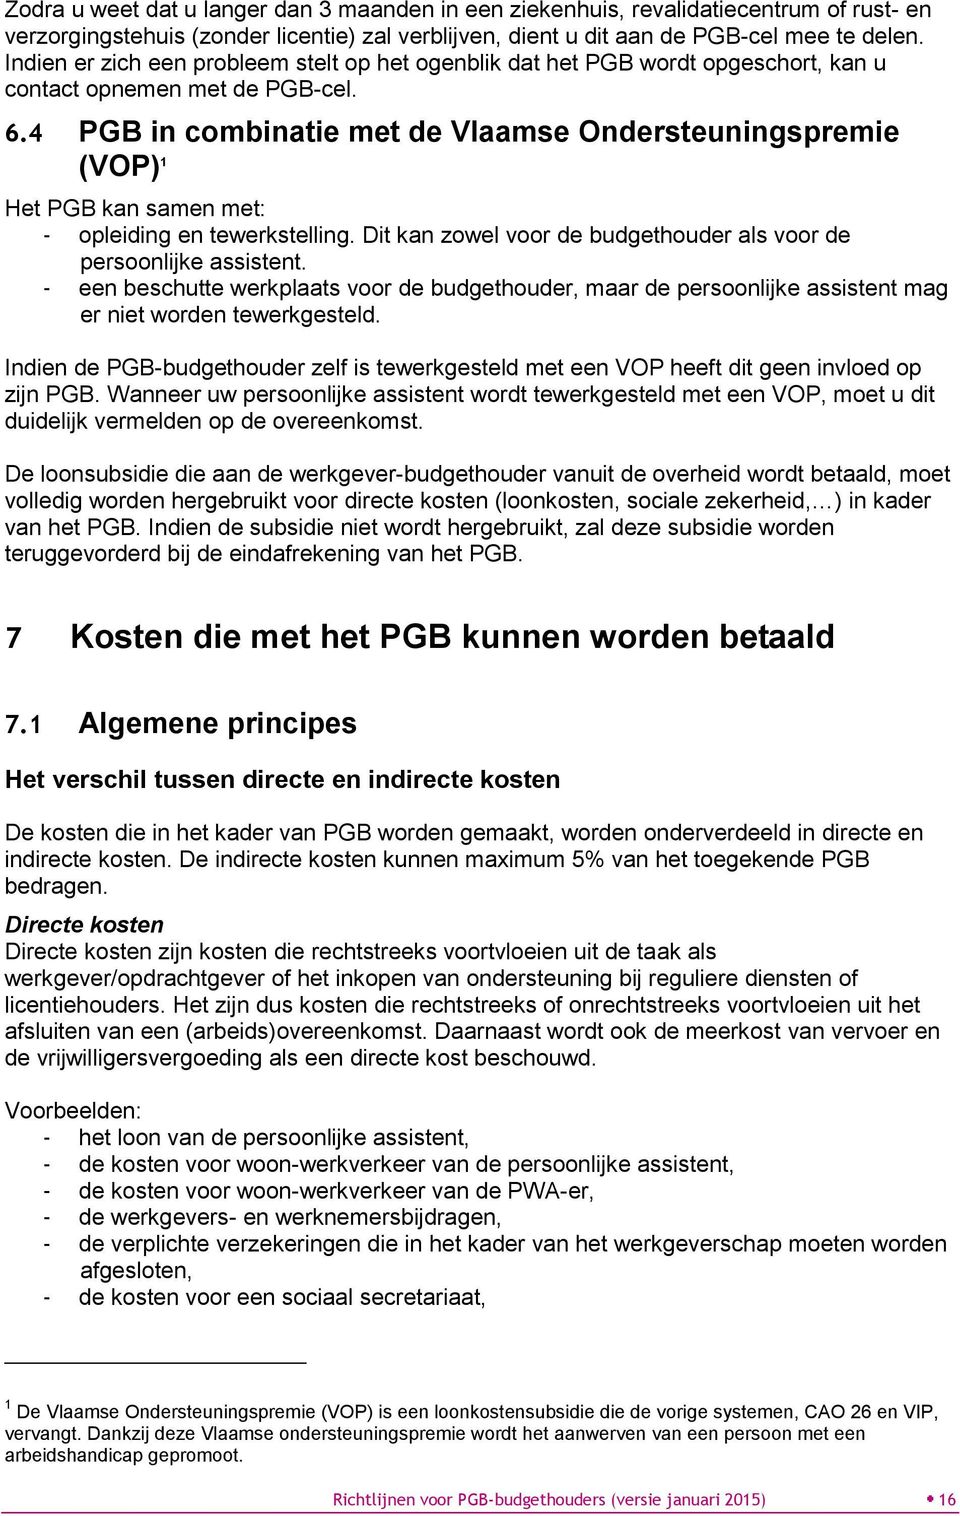 4 PGB in combinatie met de Vlaamse Ondersteuningspremie (VOP) 1 Het PGB kan samen met: - opleiding en tewerkstelling. Dit kan zowel voor de budgethouder als voor de persoonlijke assistent.